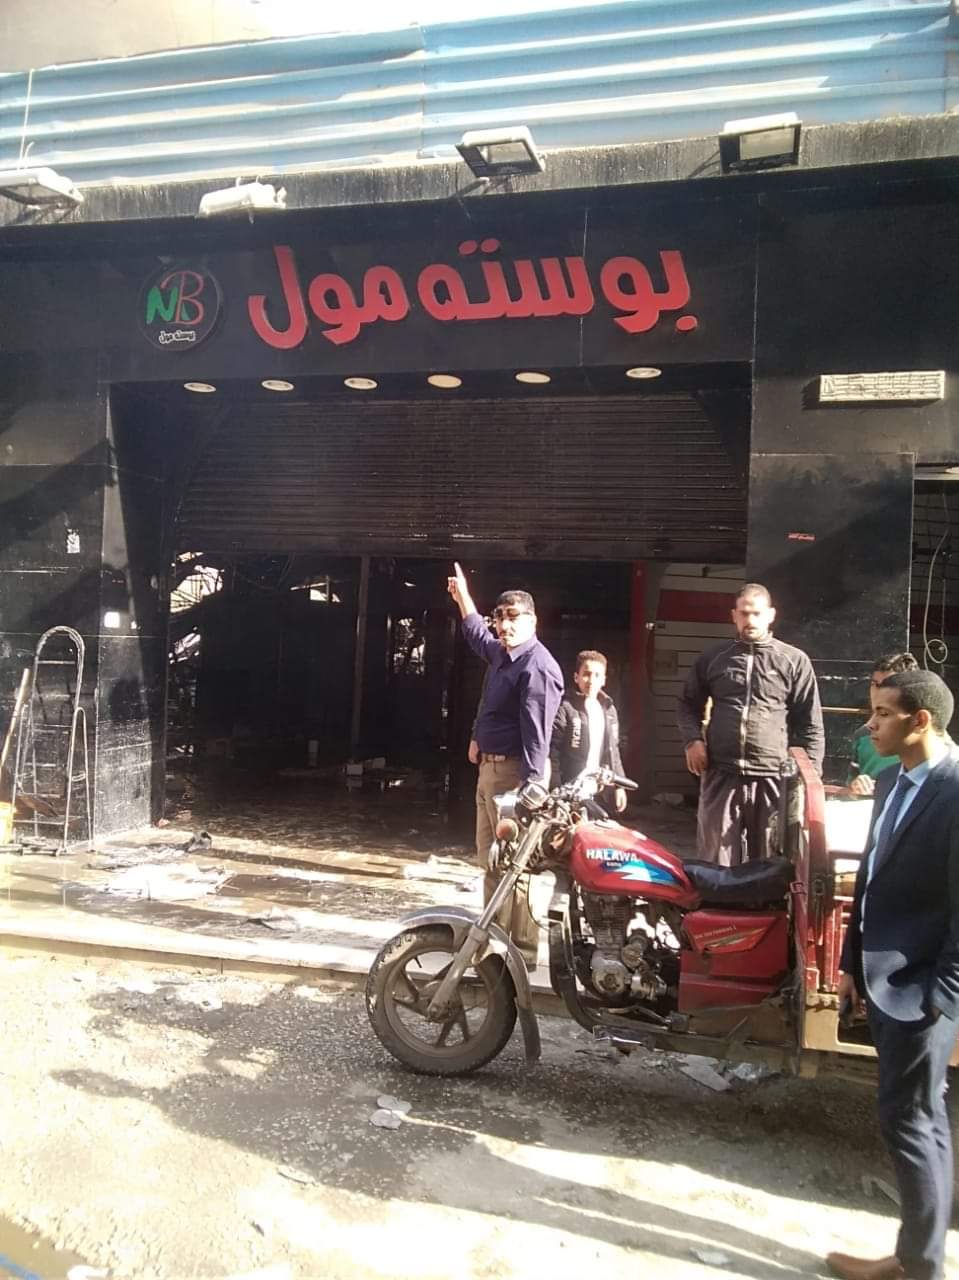 حريق هائل في شارع البوستة بمدينة الزقازيق9 Receiv28